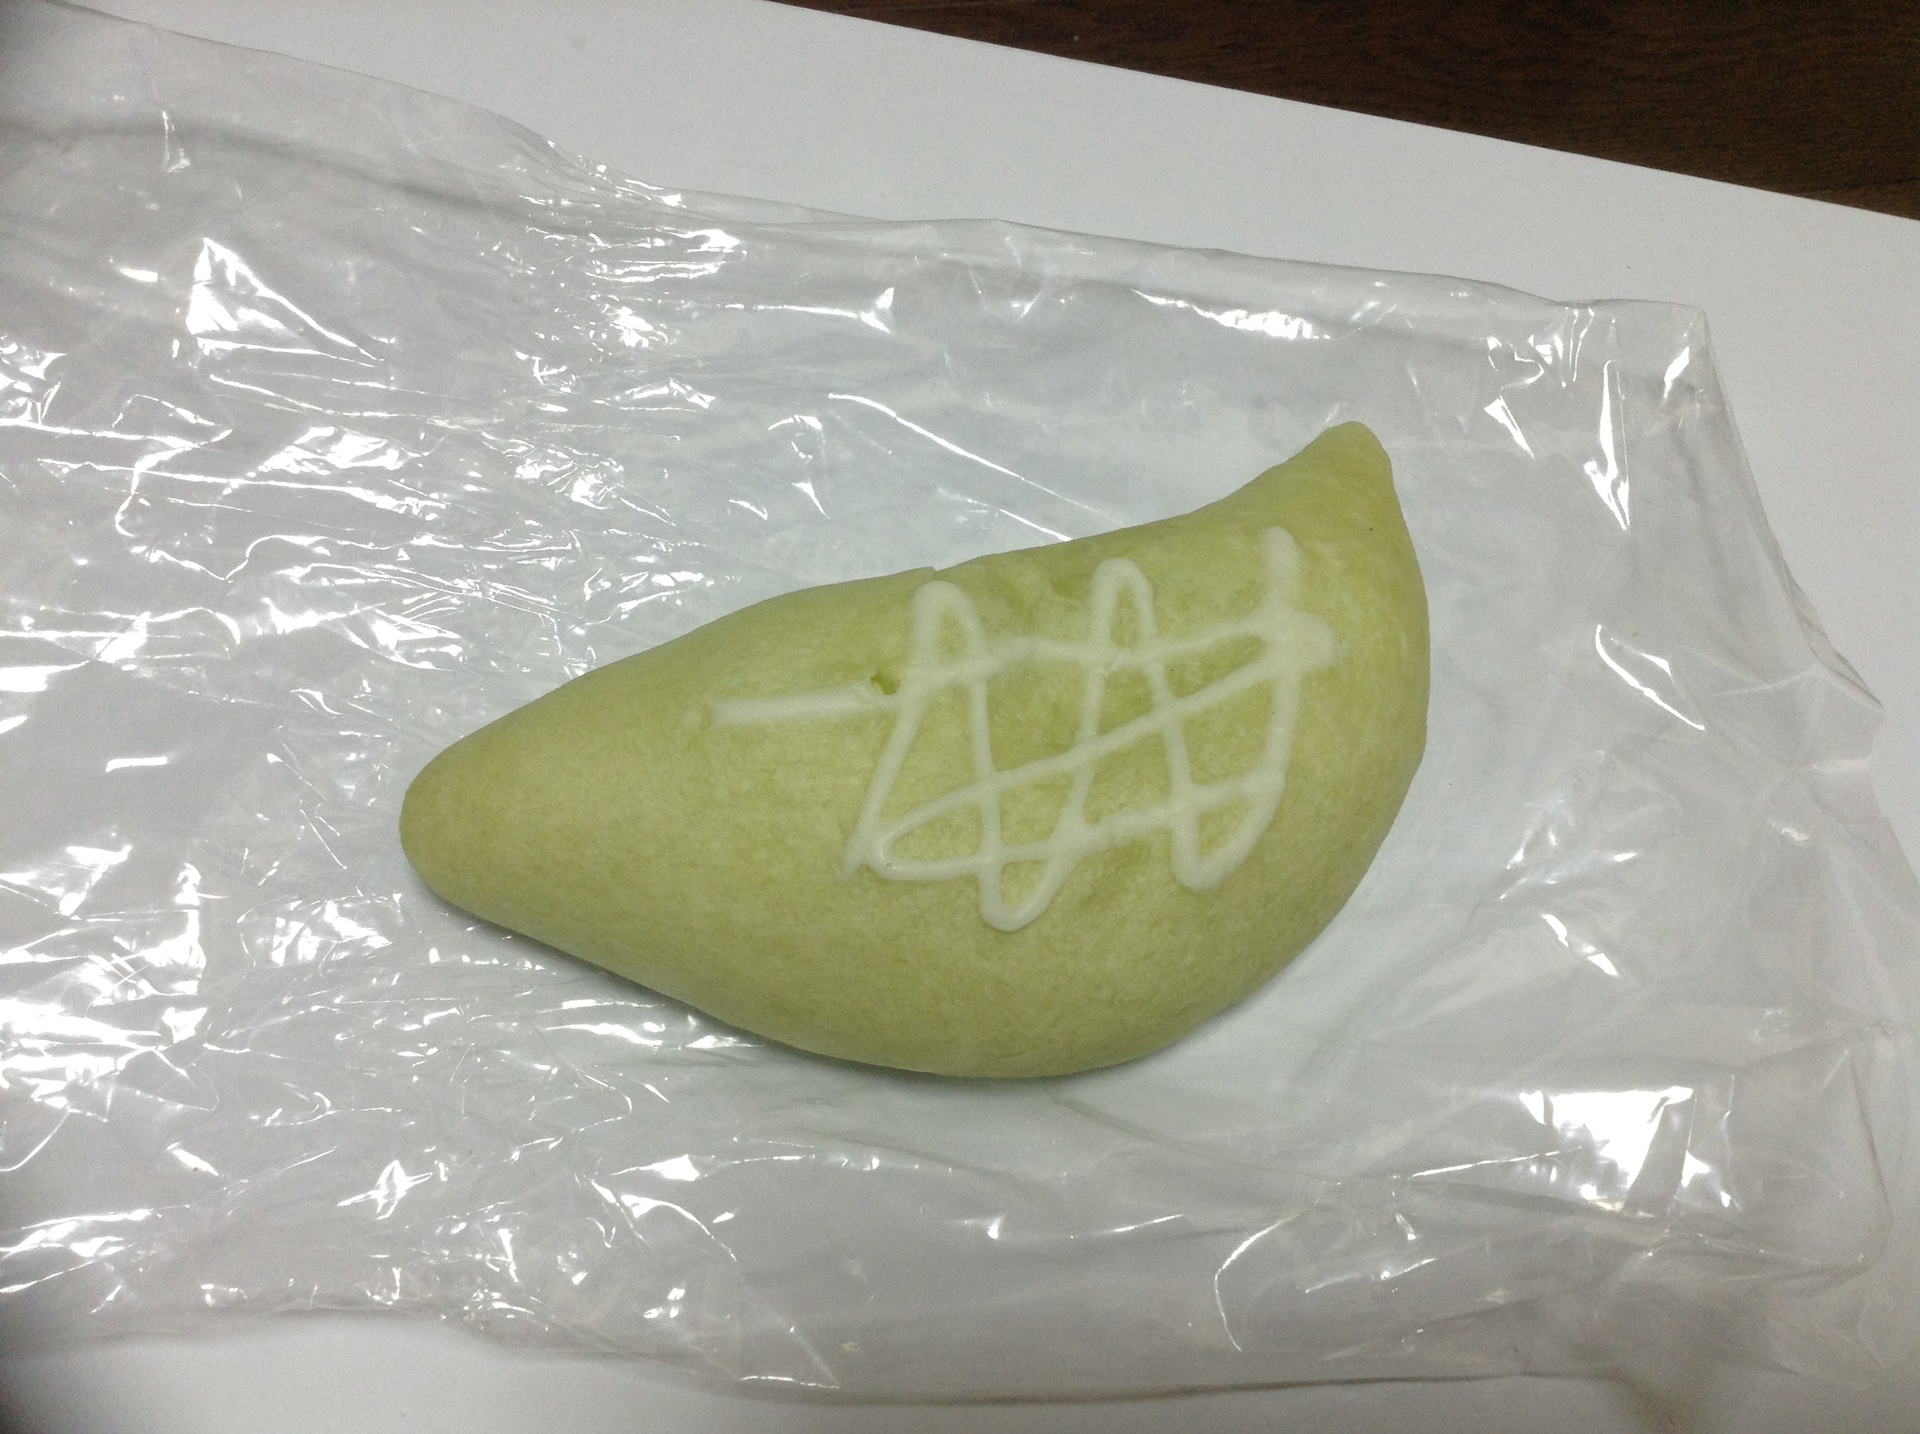 フルーツtakano タカノ のメロンパン シュトルーデルマスクメロン おいしいメロンパンの皮を中心に解説しているブログ